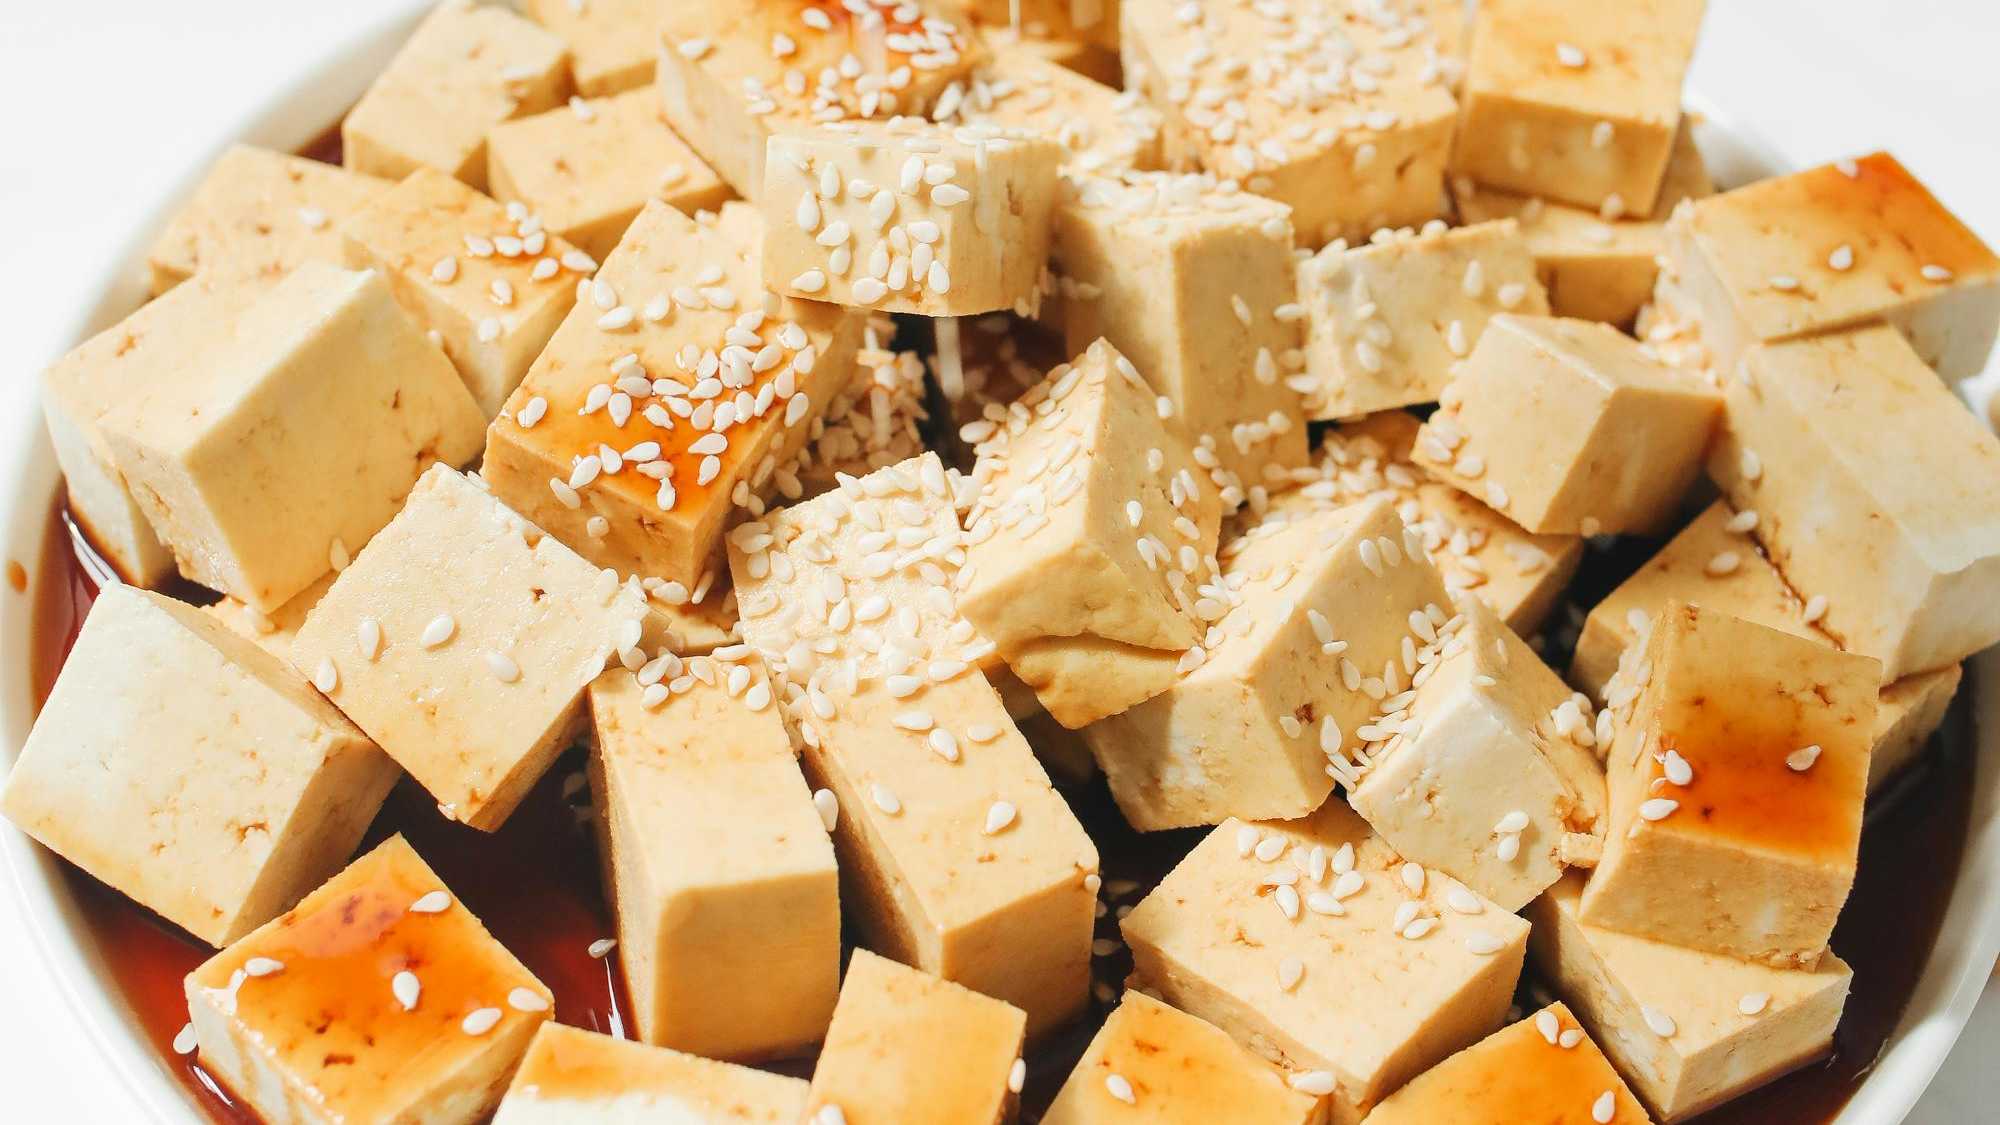 I formaggi vegetali di tipo Tofu, sono un ottimo nutrimento?